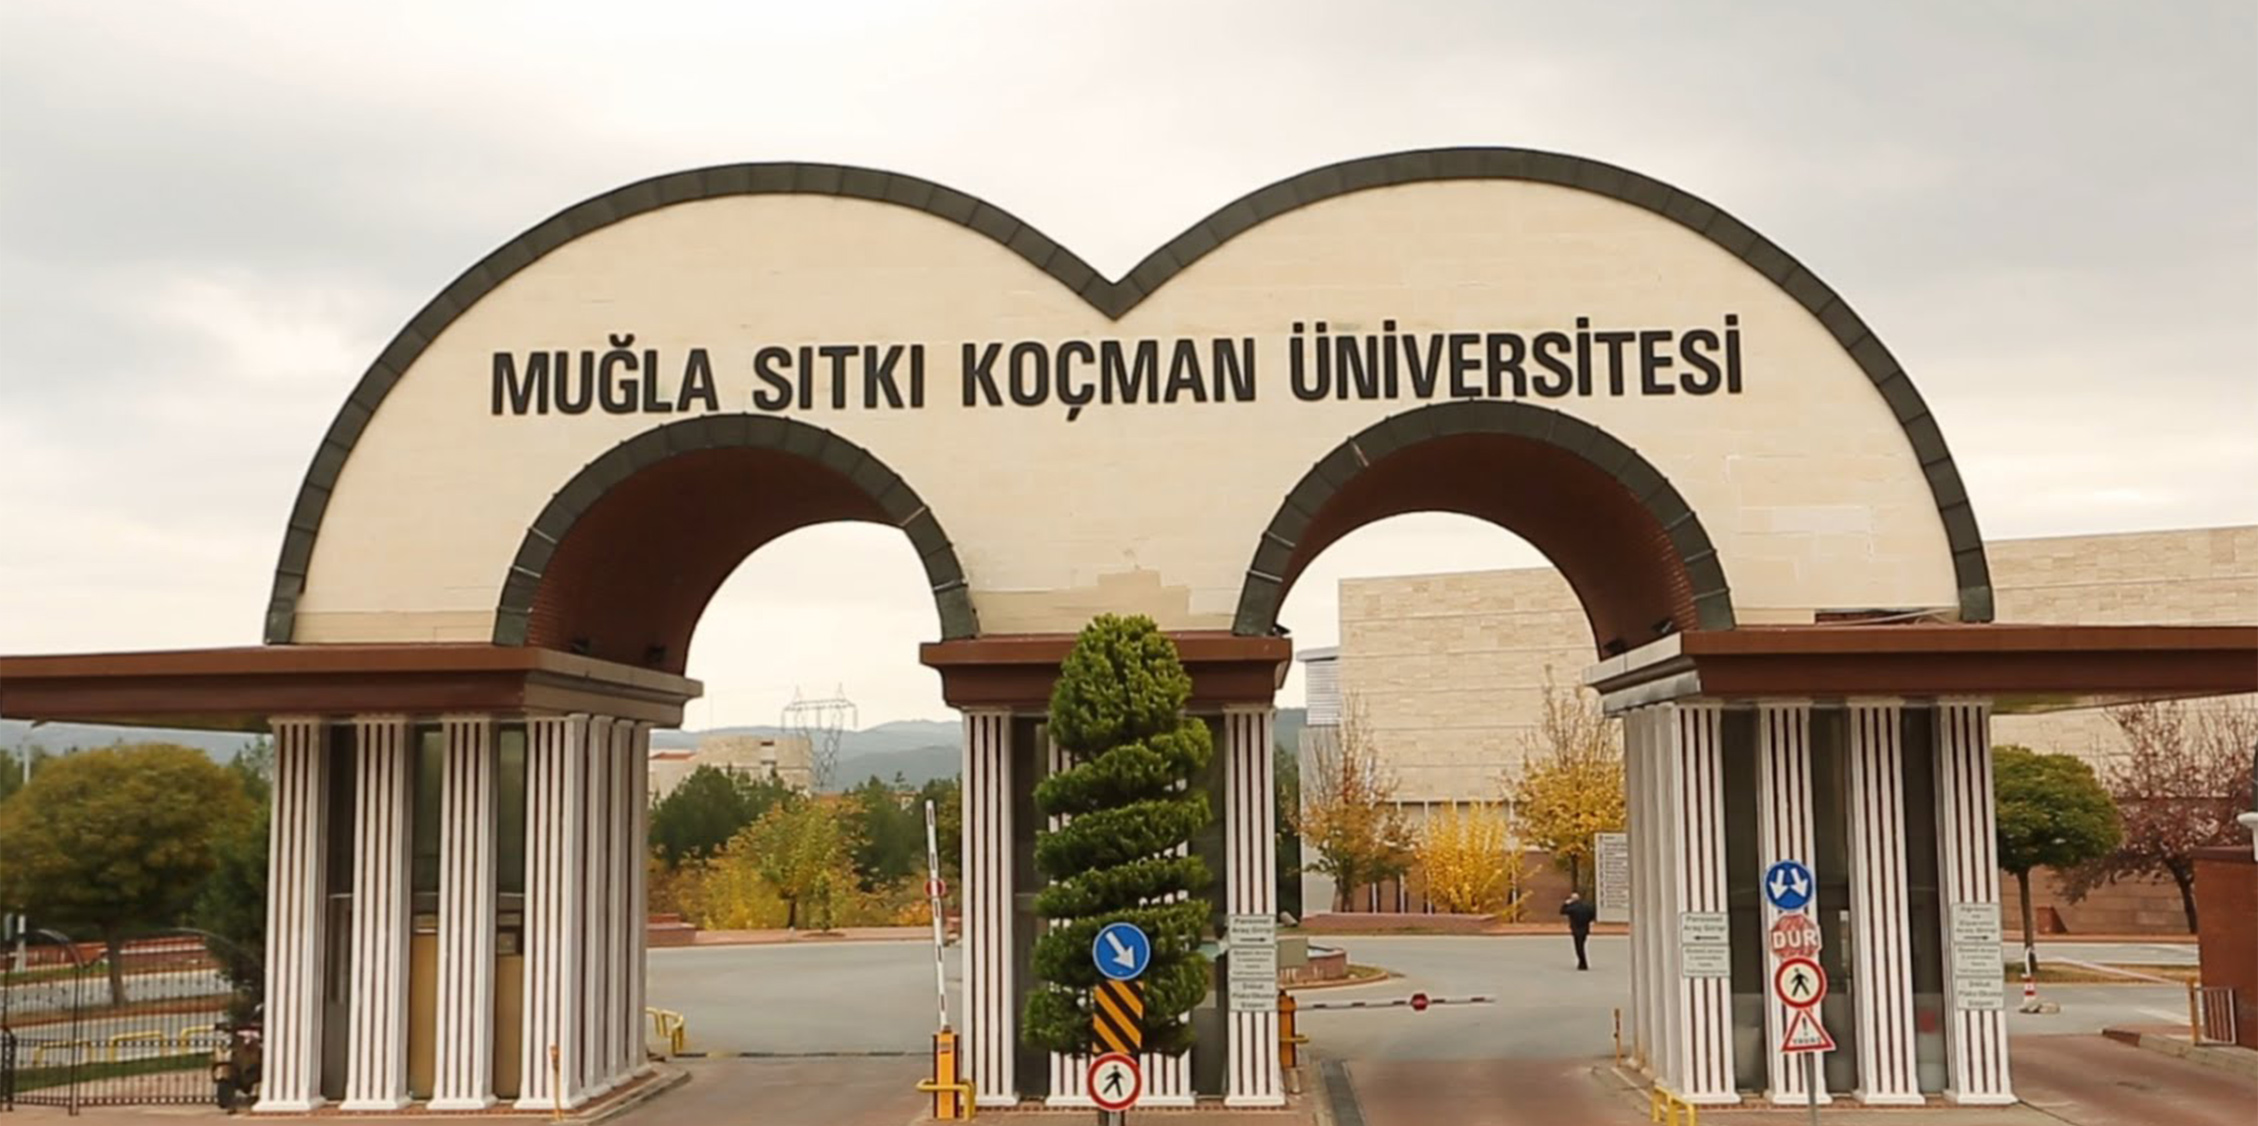 muglasitki universitesi find and study 1 - Université Muğla Sıtkı Koçman